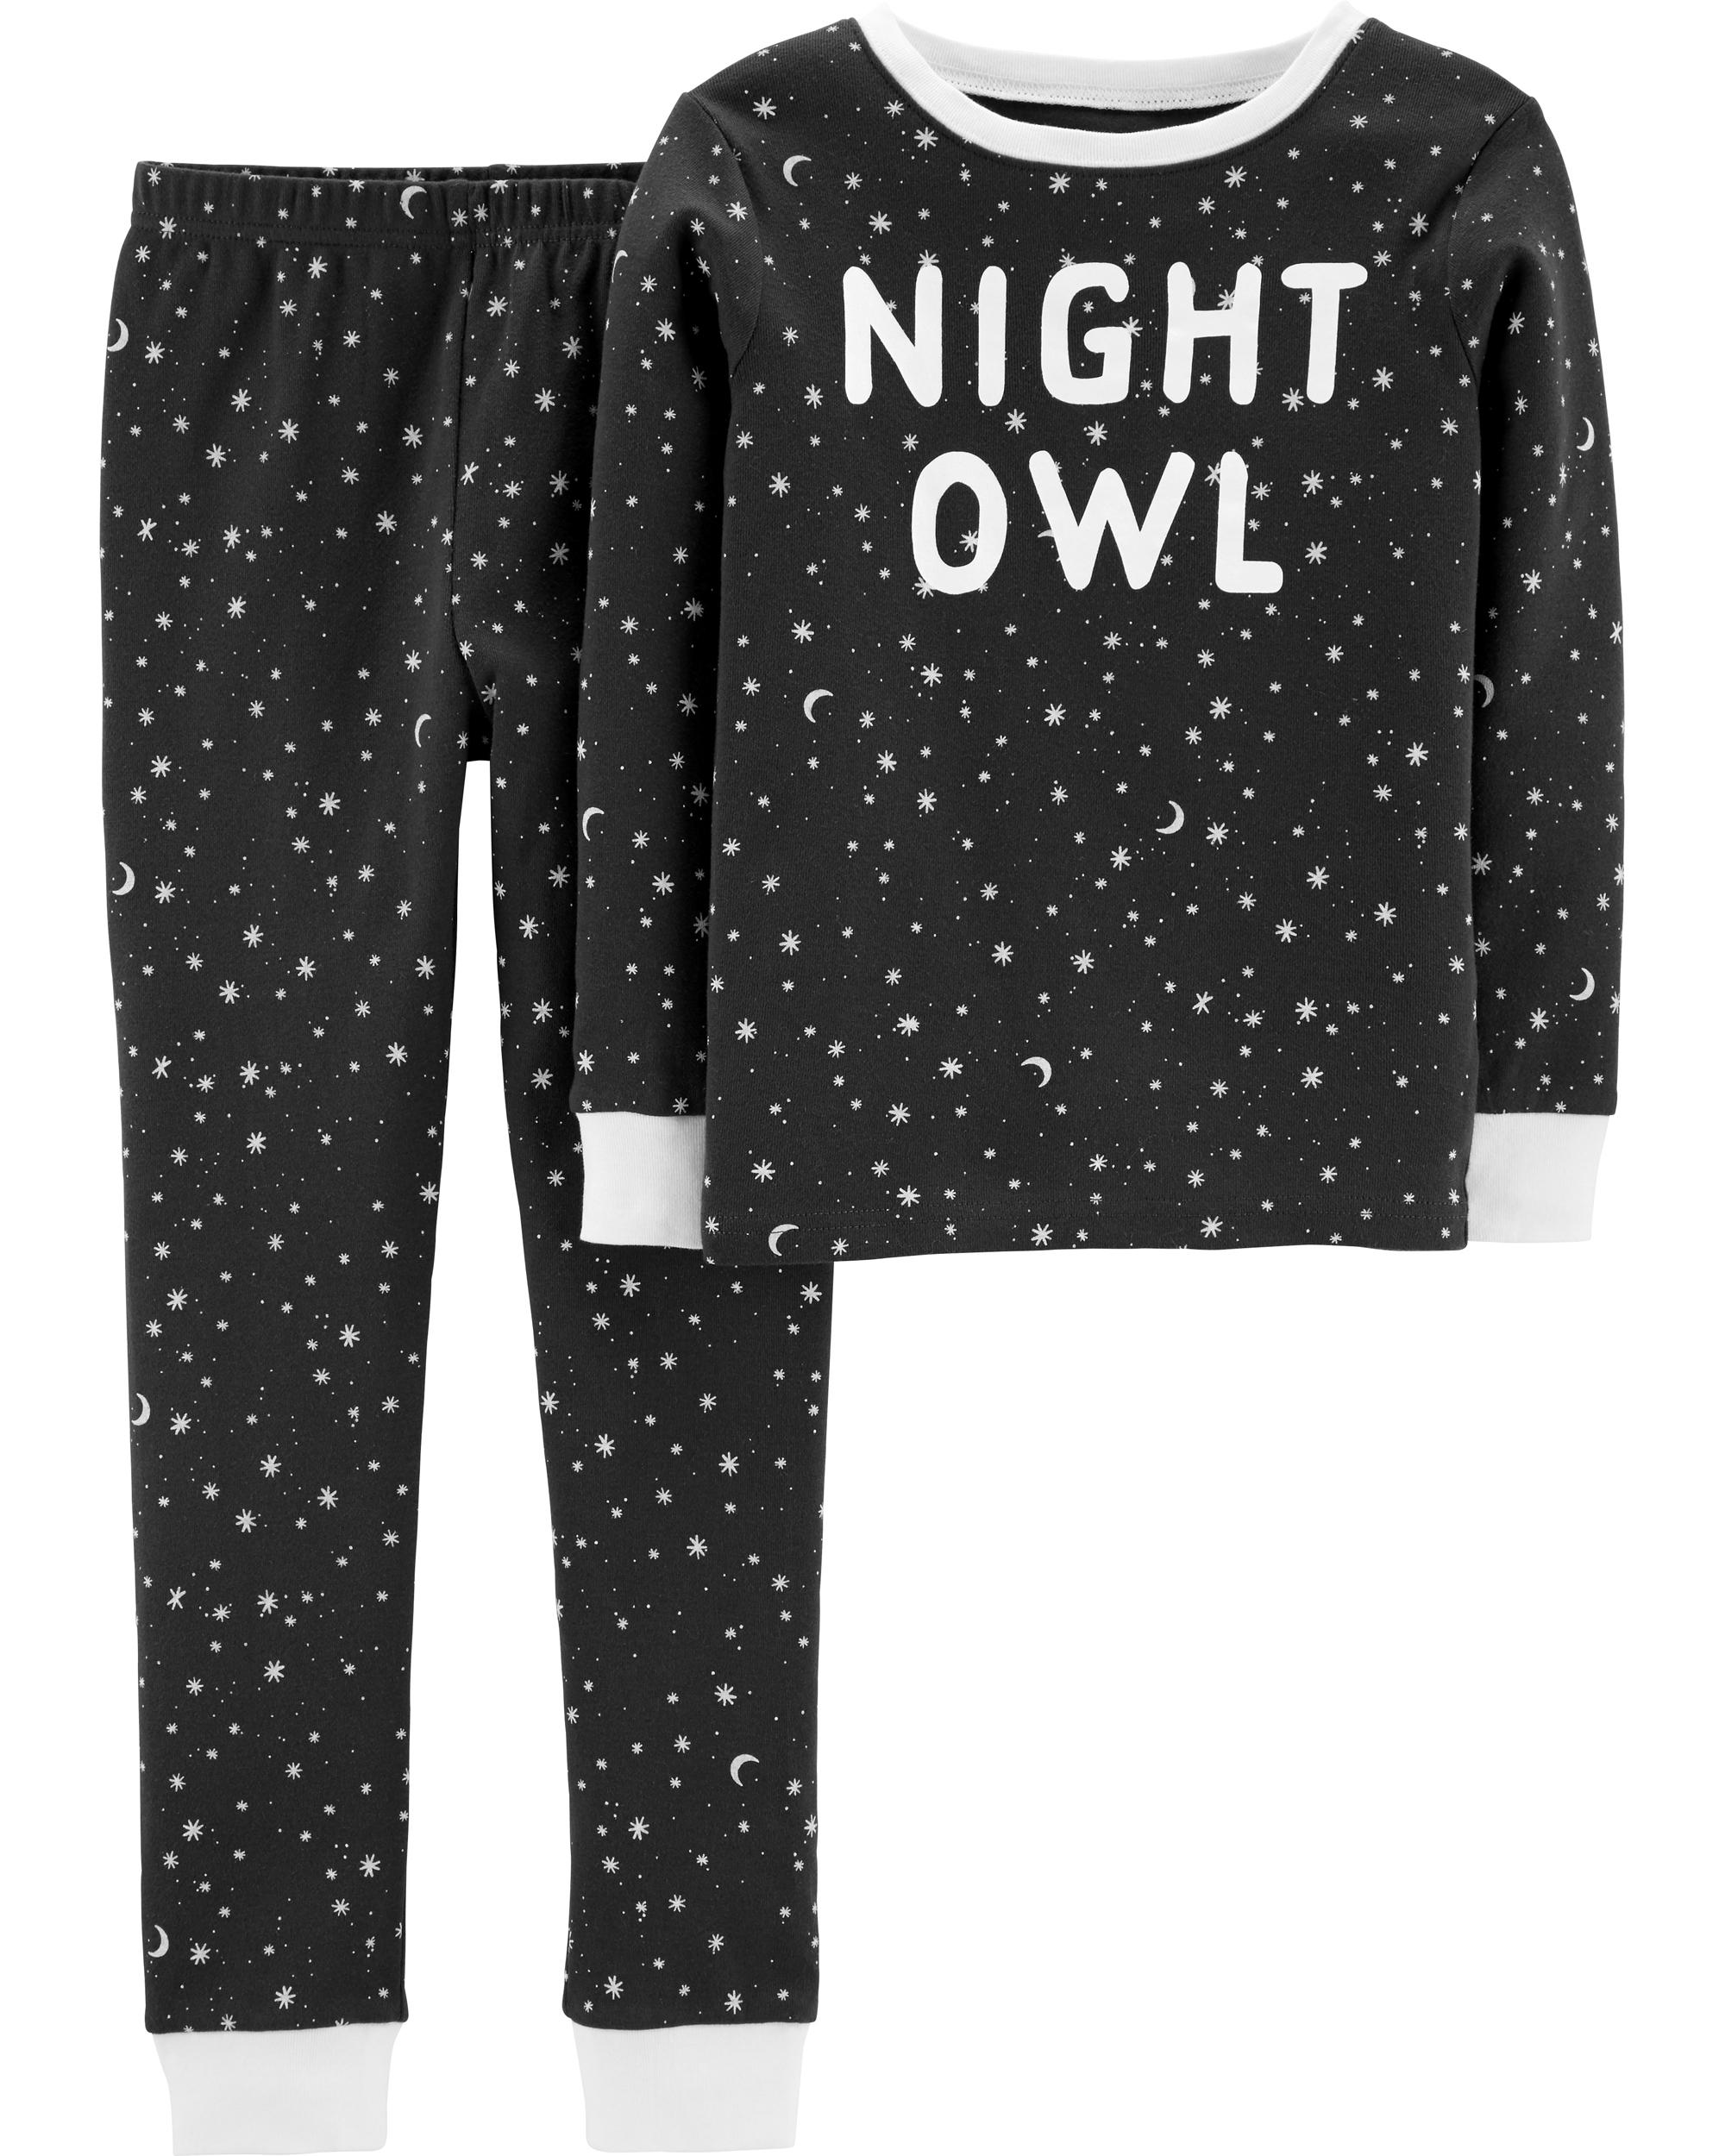 insomniax owl pajamas